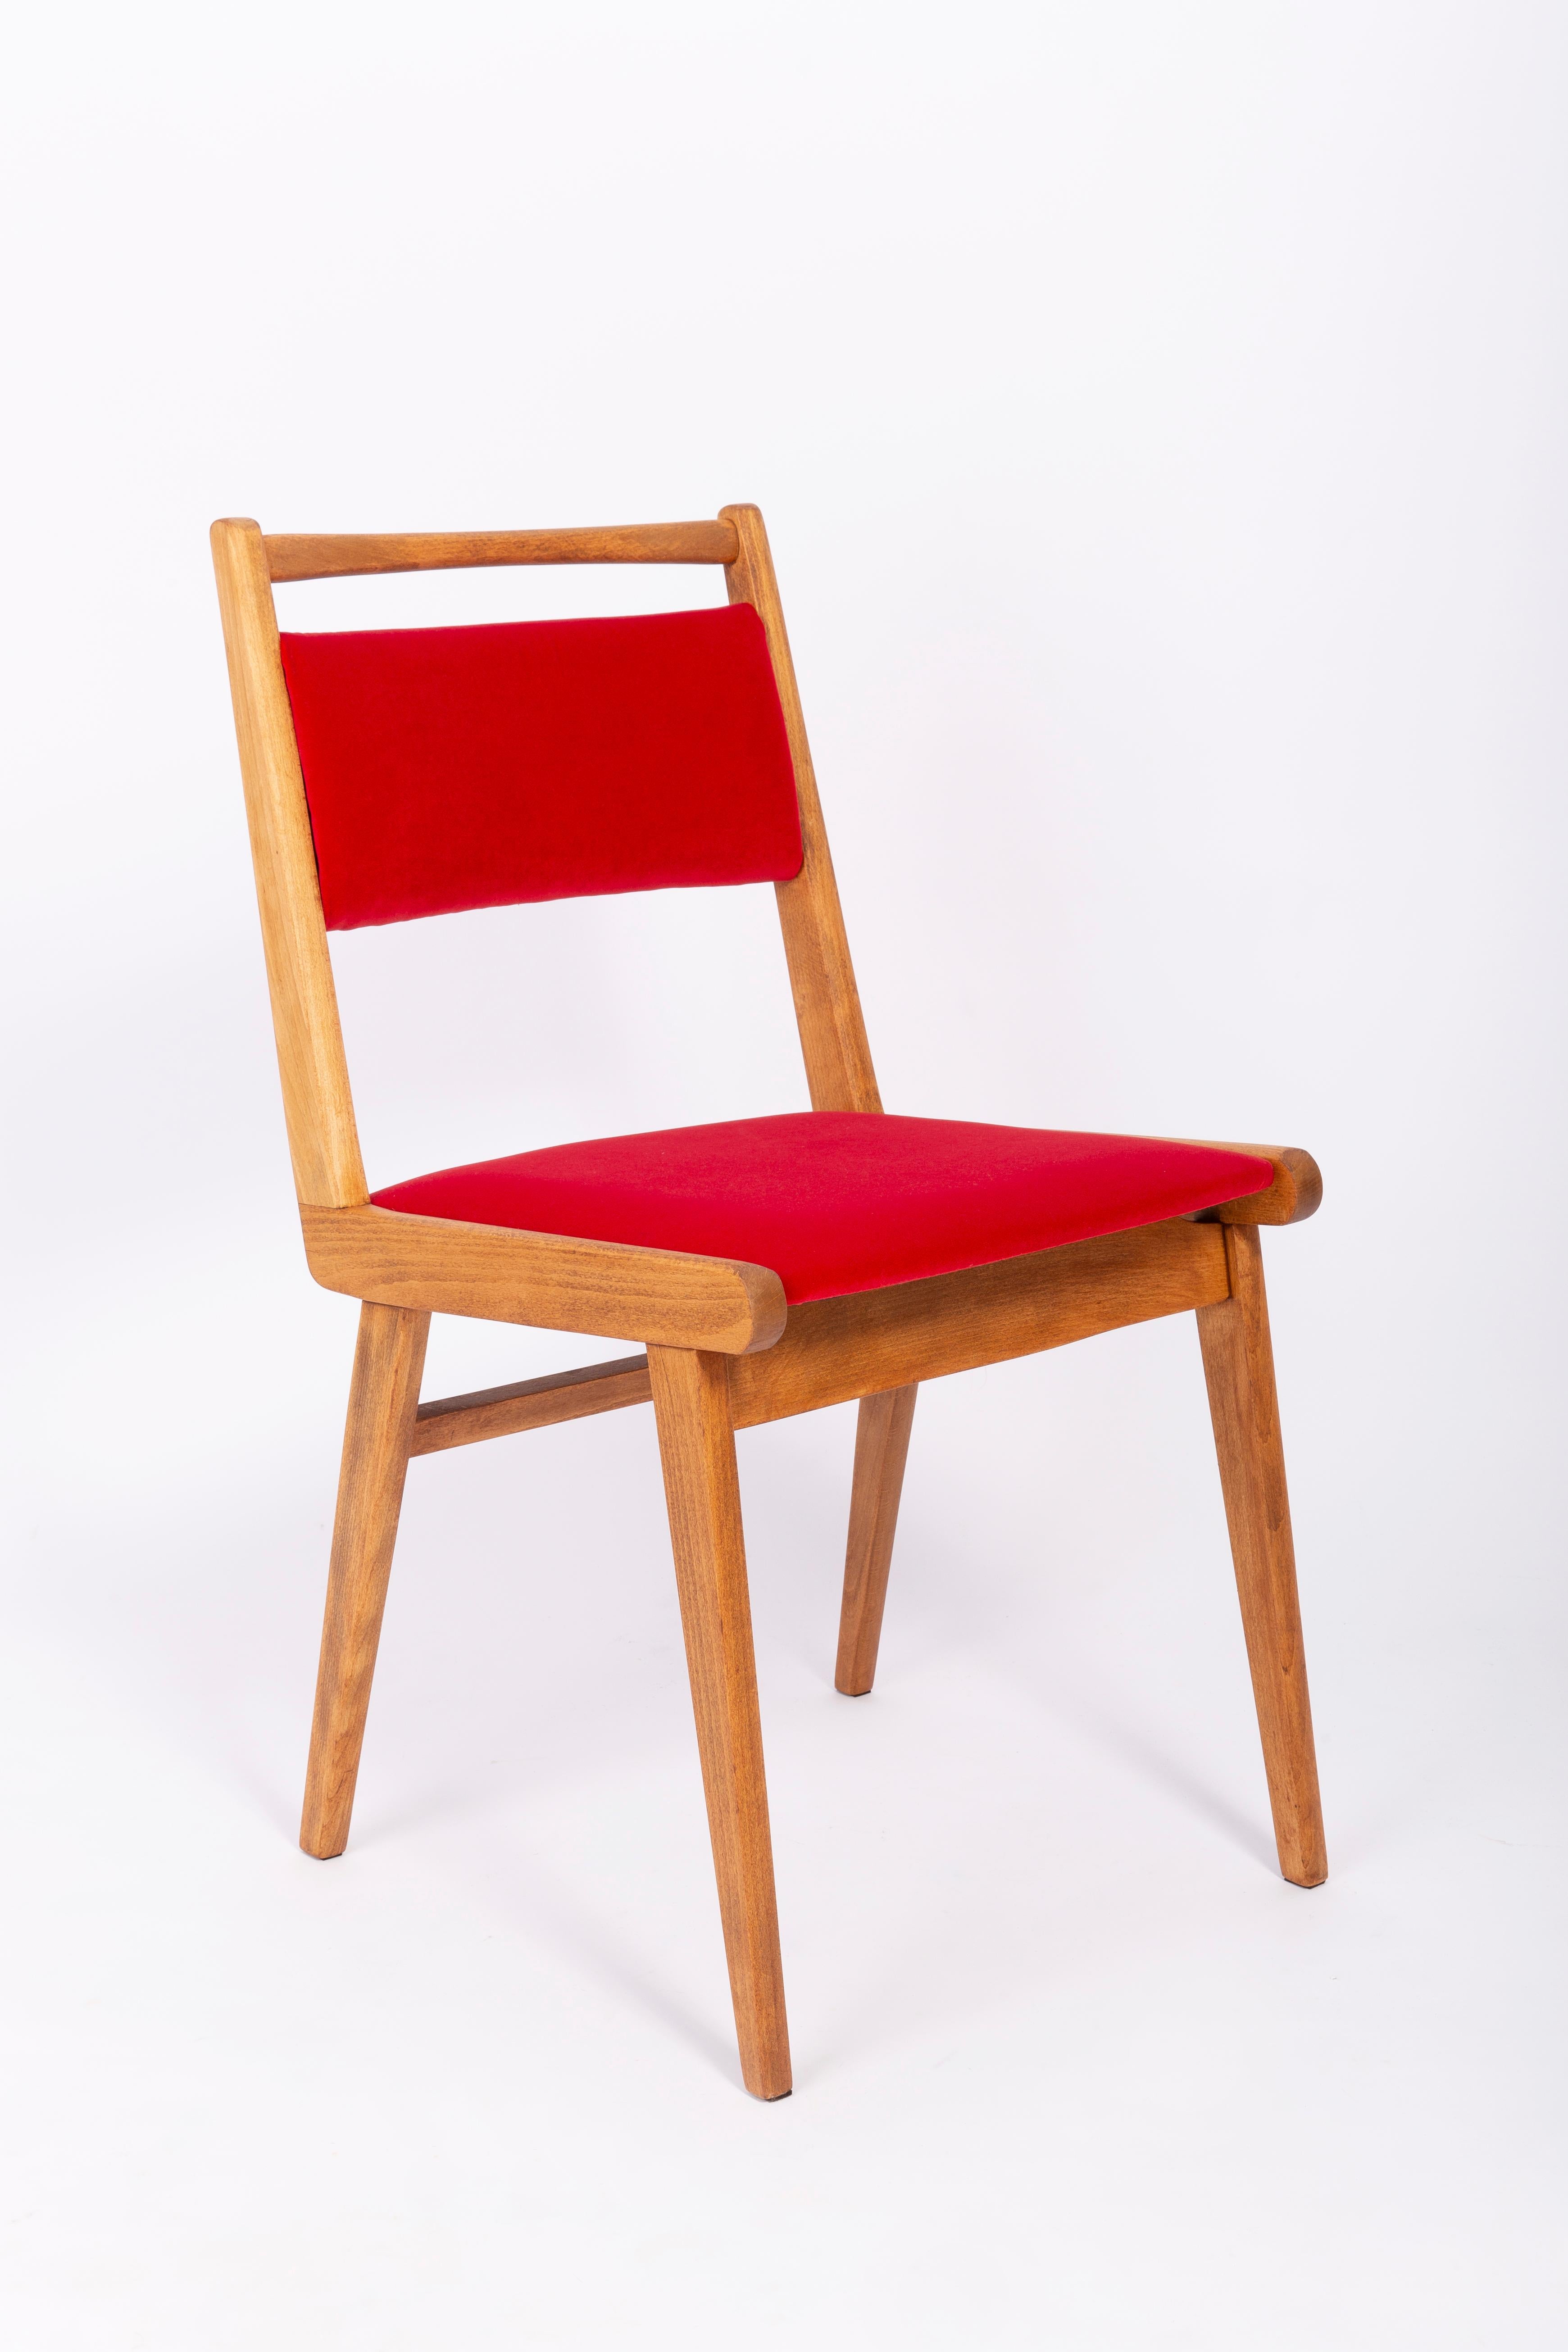 Stühle entworfen von Prof. Rajmund Halas. Es handelt sich um ein Modell vom Typ Jar. Hergestellt aus Buchenholz. Die Stühle sind komplett neu gepolstert, die Holzarbeiten wurden aufgefrischt. Sitz und Rückenlehne sind mit rotem, strapazierfähigem